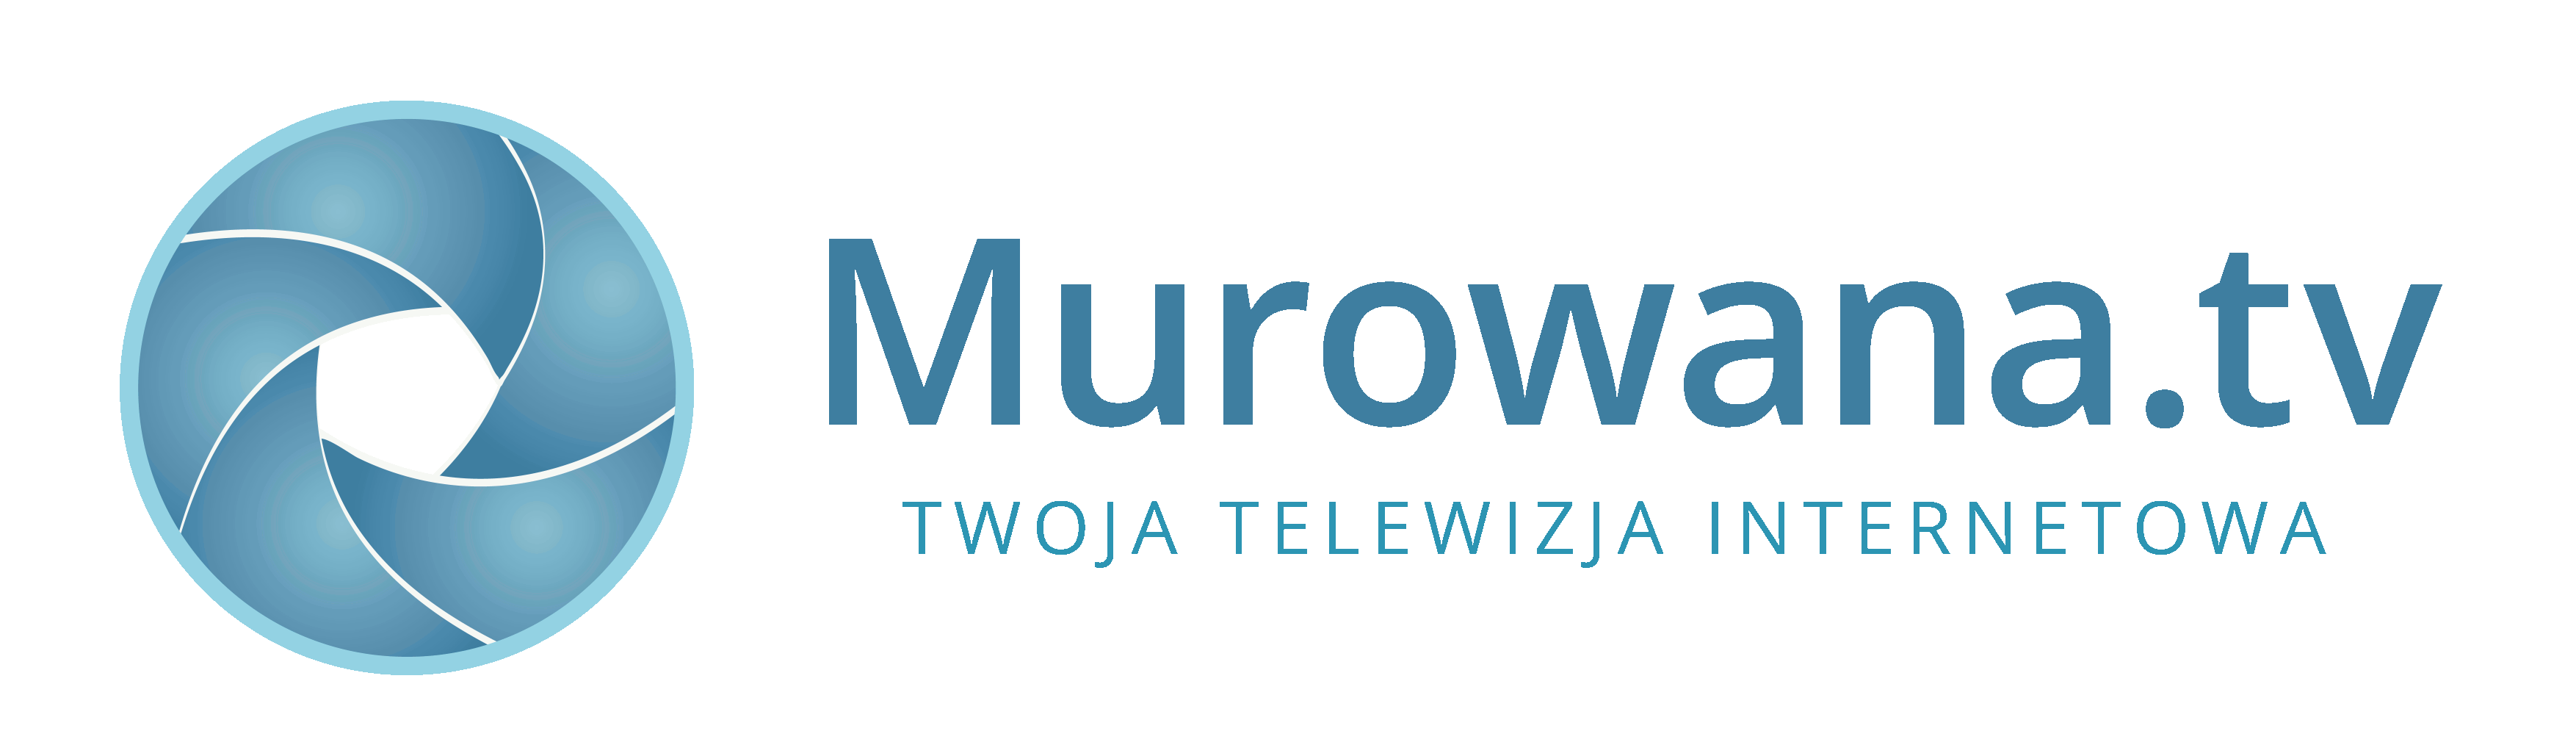 Murowana.tv